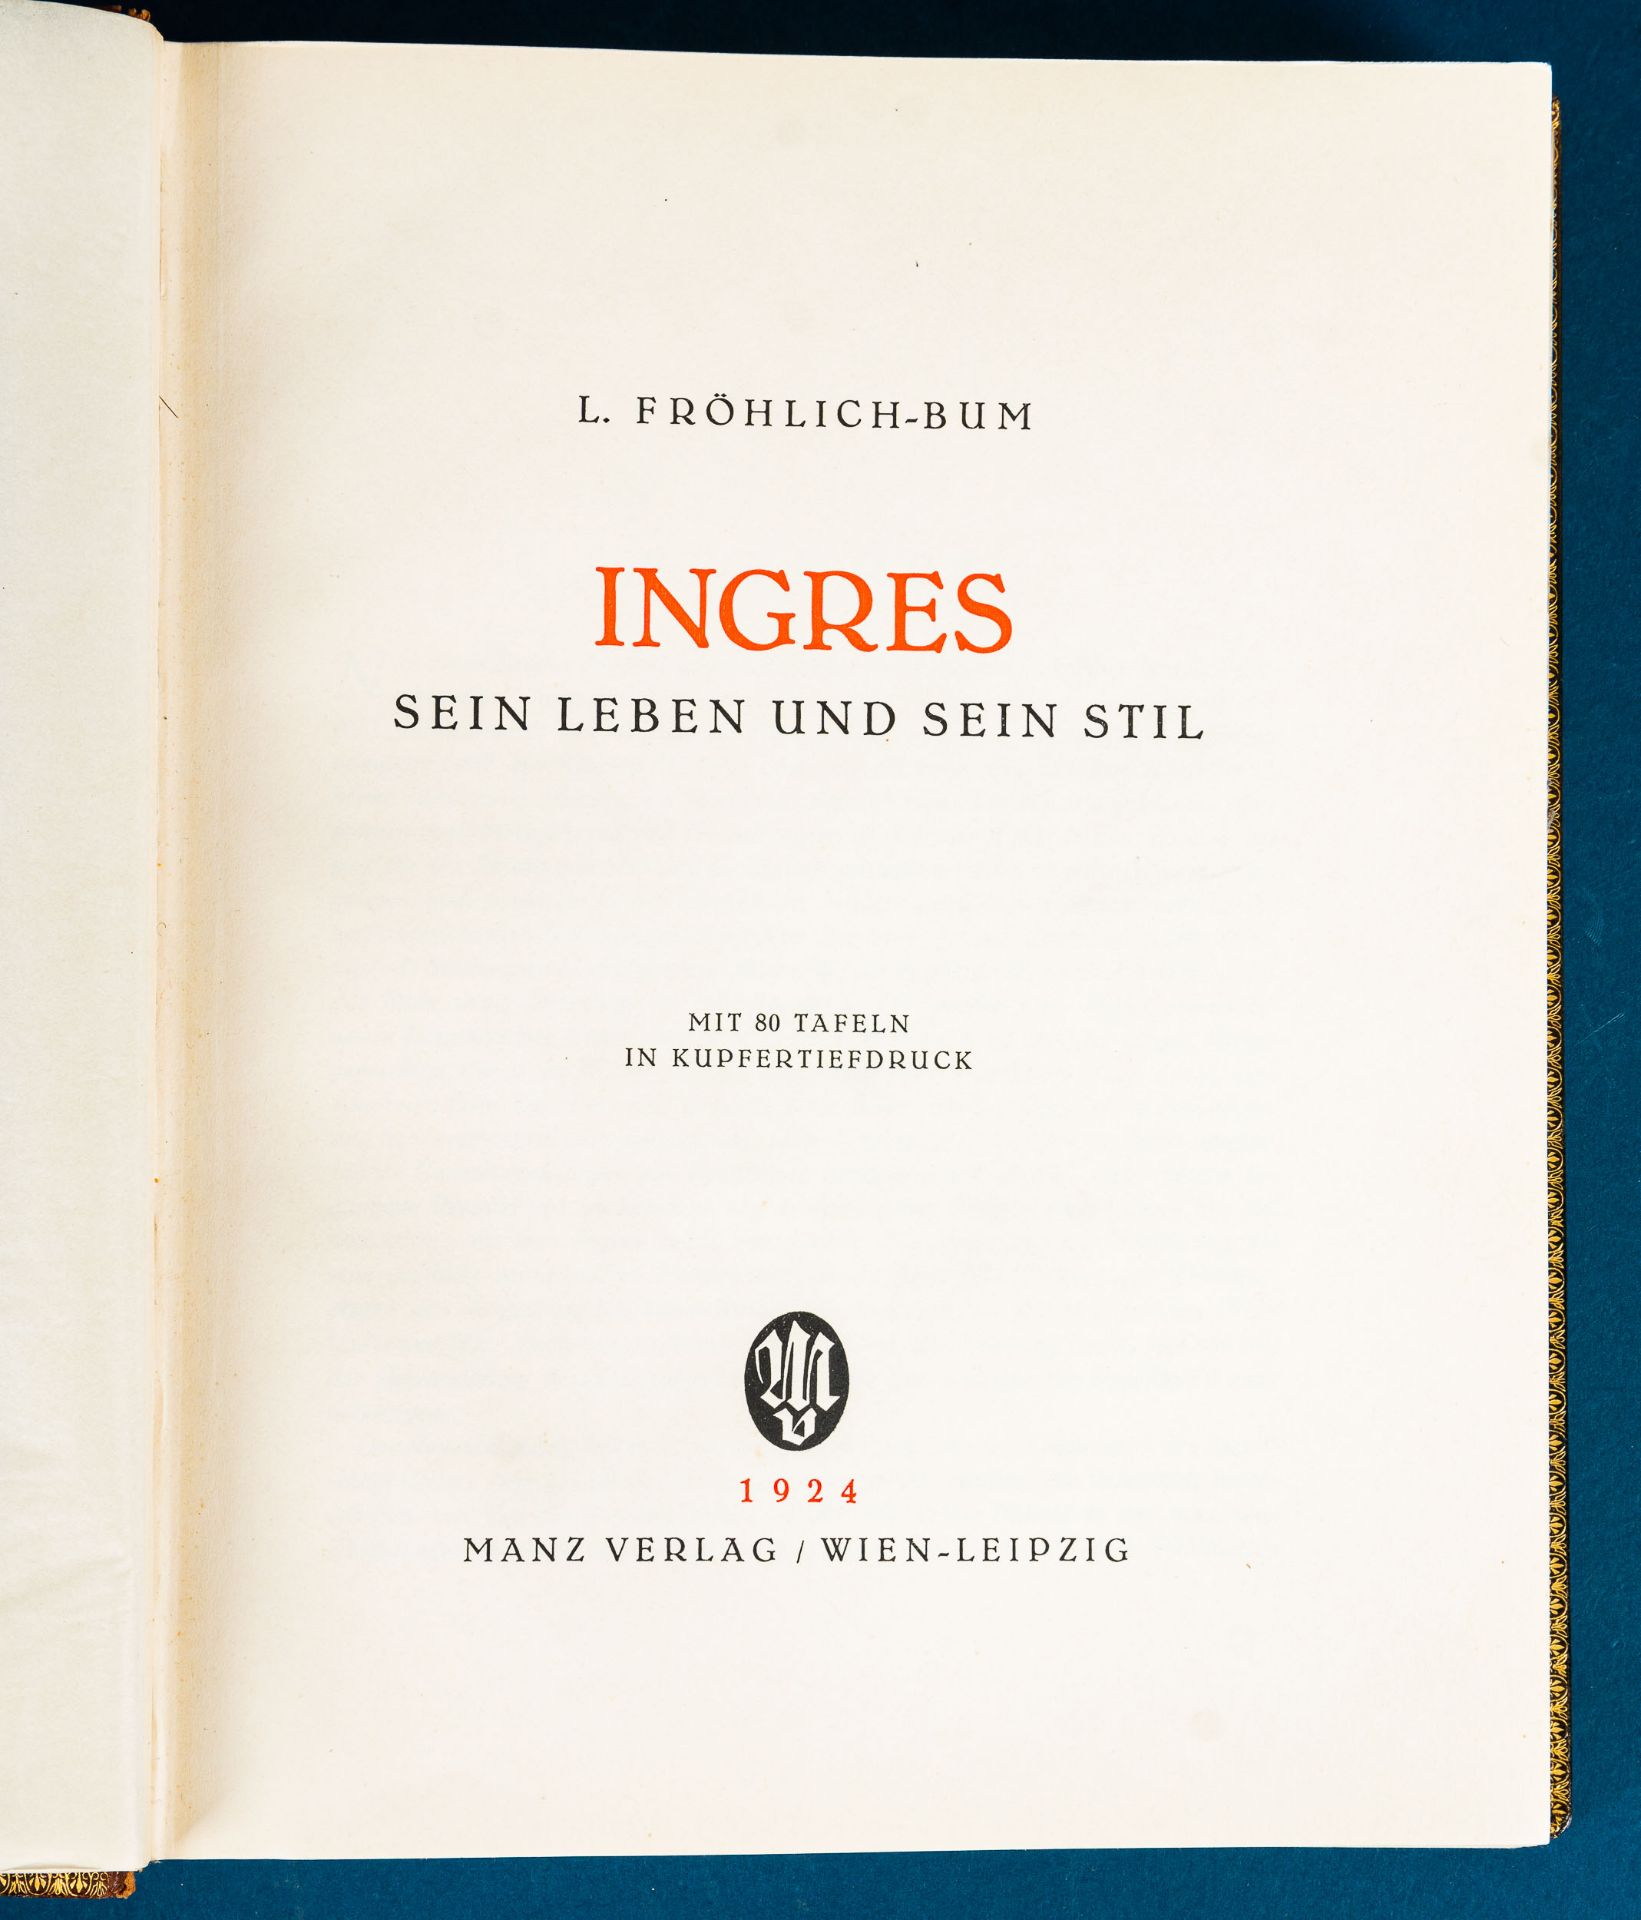 "INGRES" sein Leben und sein Stil, von L. Fröhlich - Bum, erschienen im Manzver - Image 7 of 11